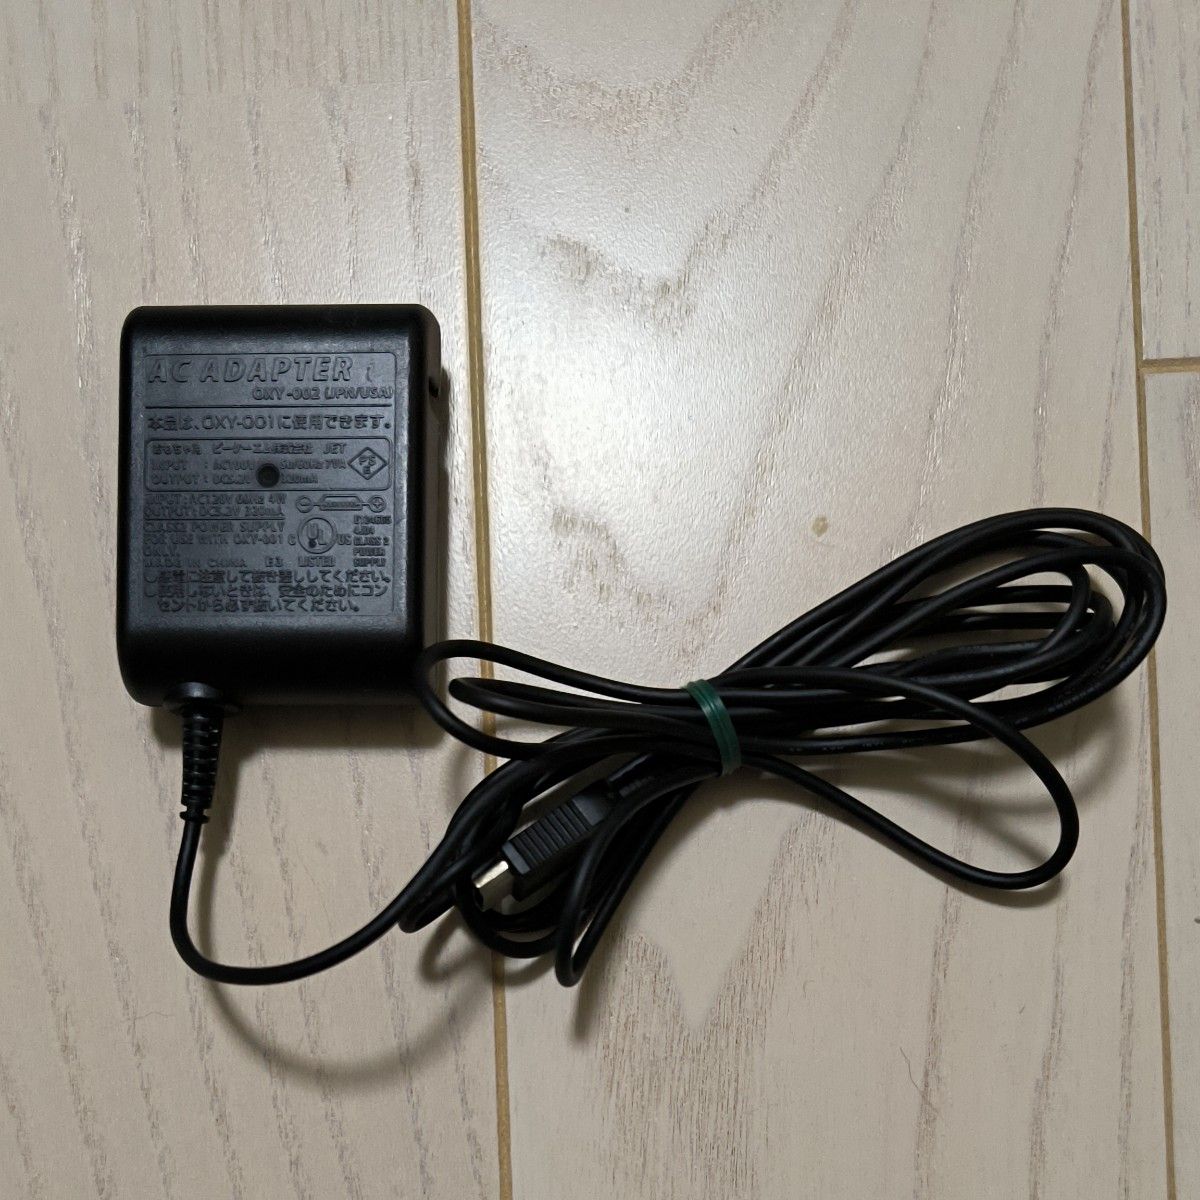 ゲームボーイミクロ 純正ACアダプター OXY-002 充電器